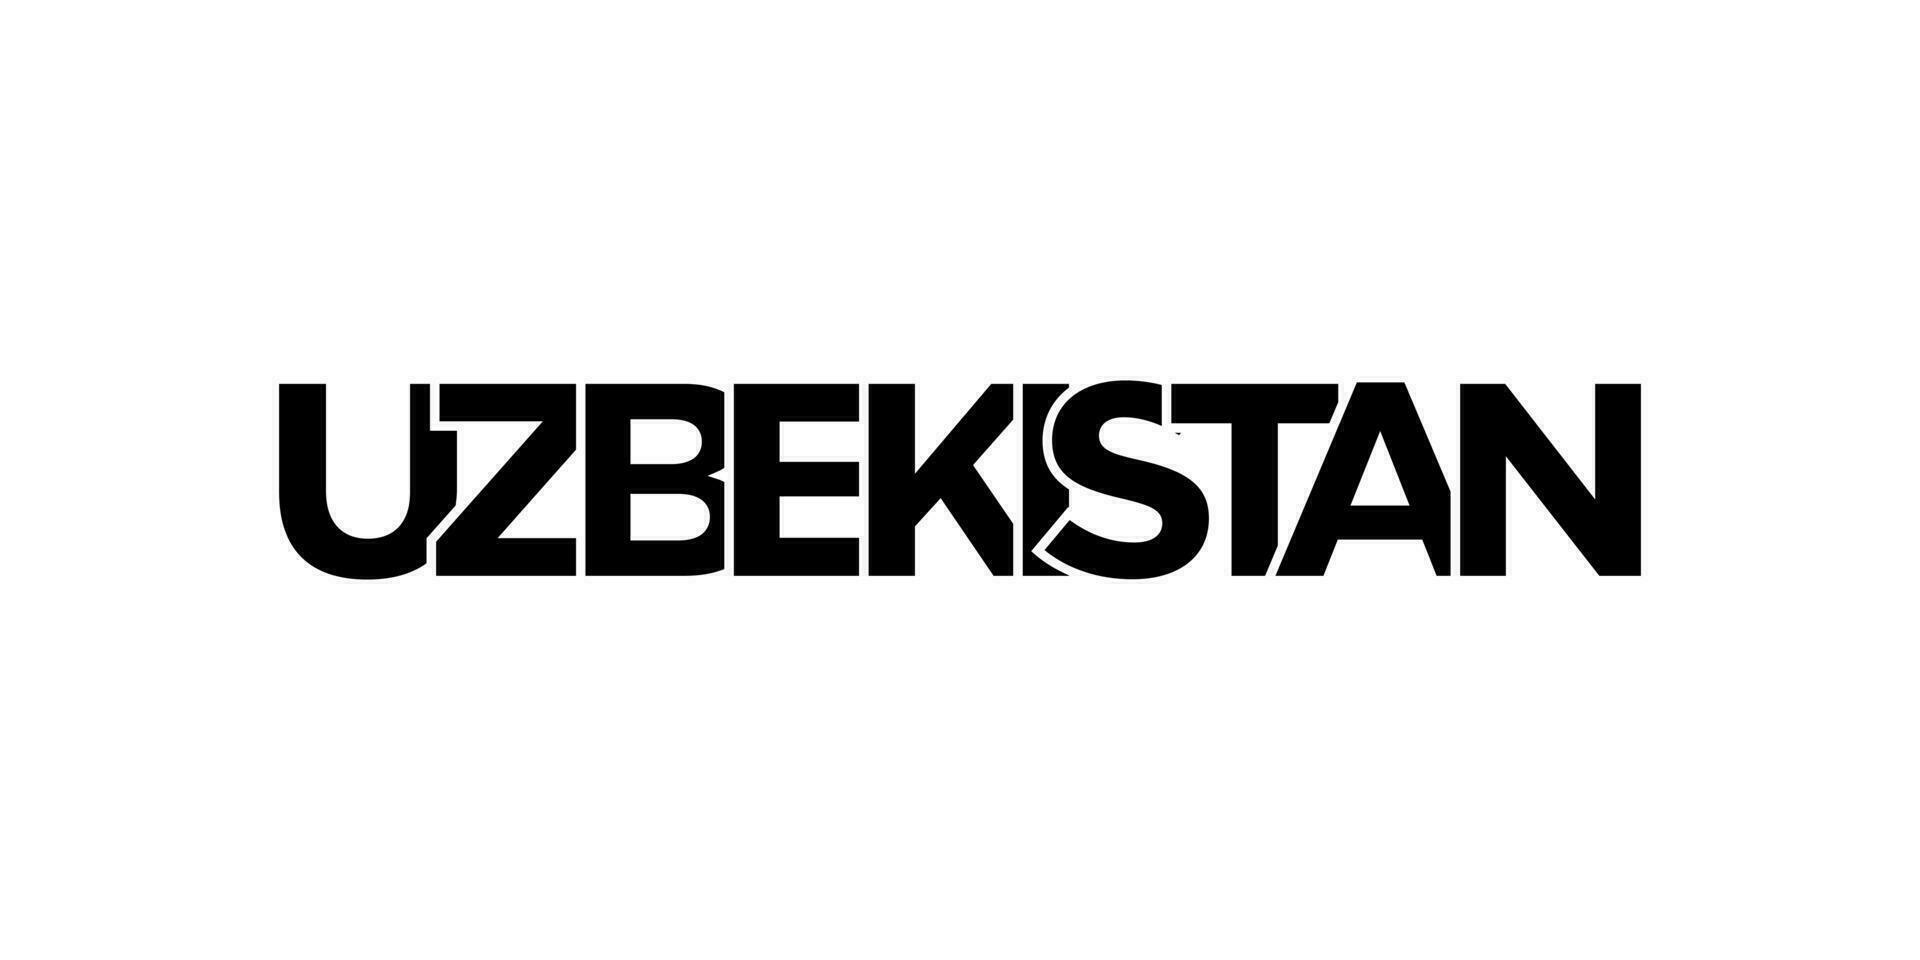 uzbekistan emblem. de design funktioner en geometrisk stil, vektor illustration med djärv typografi i en modern font. de grafisk slogan text.